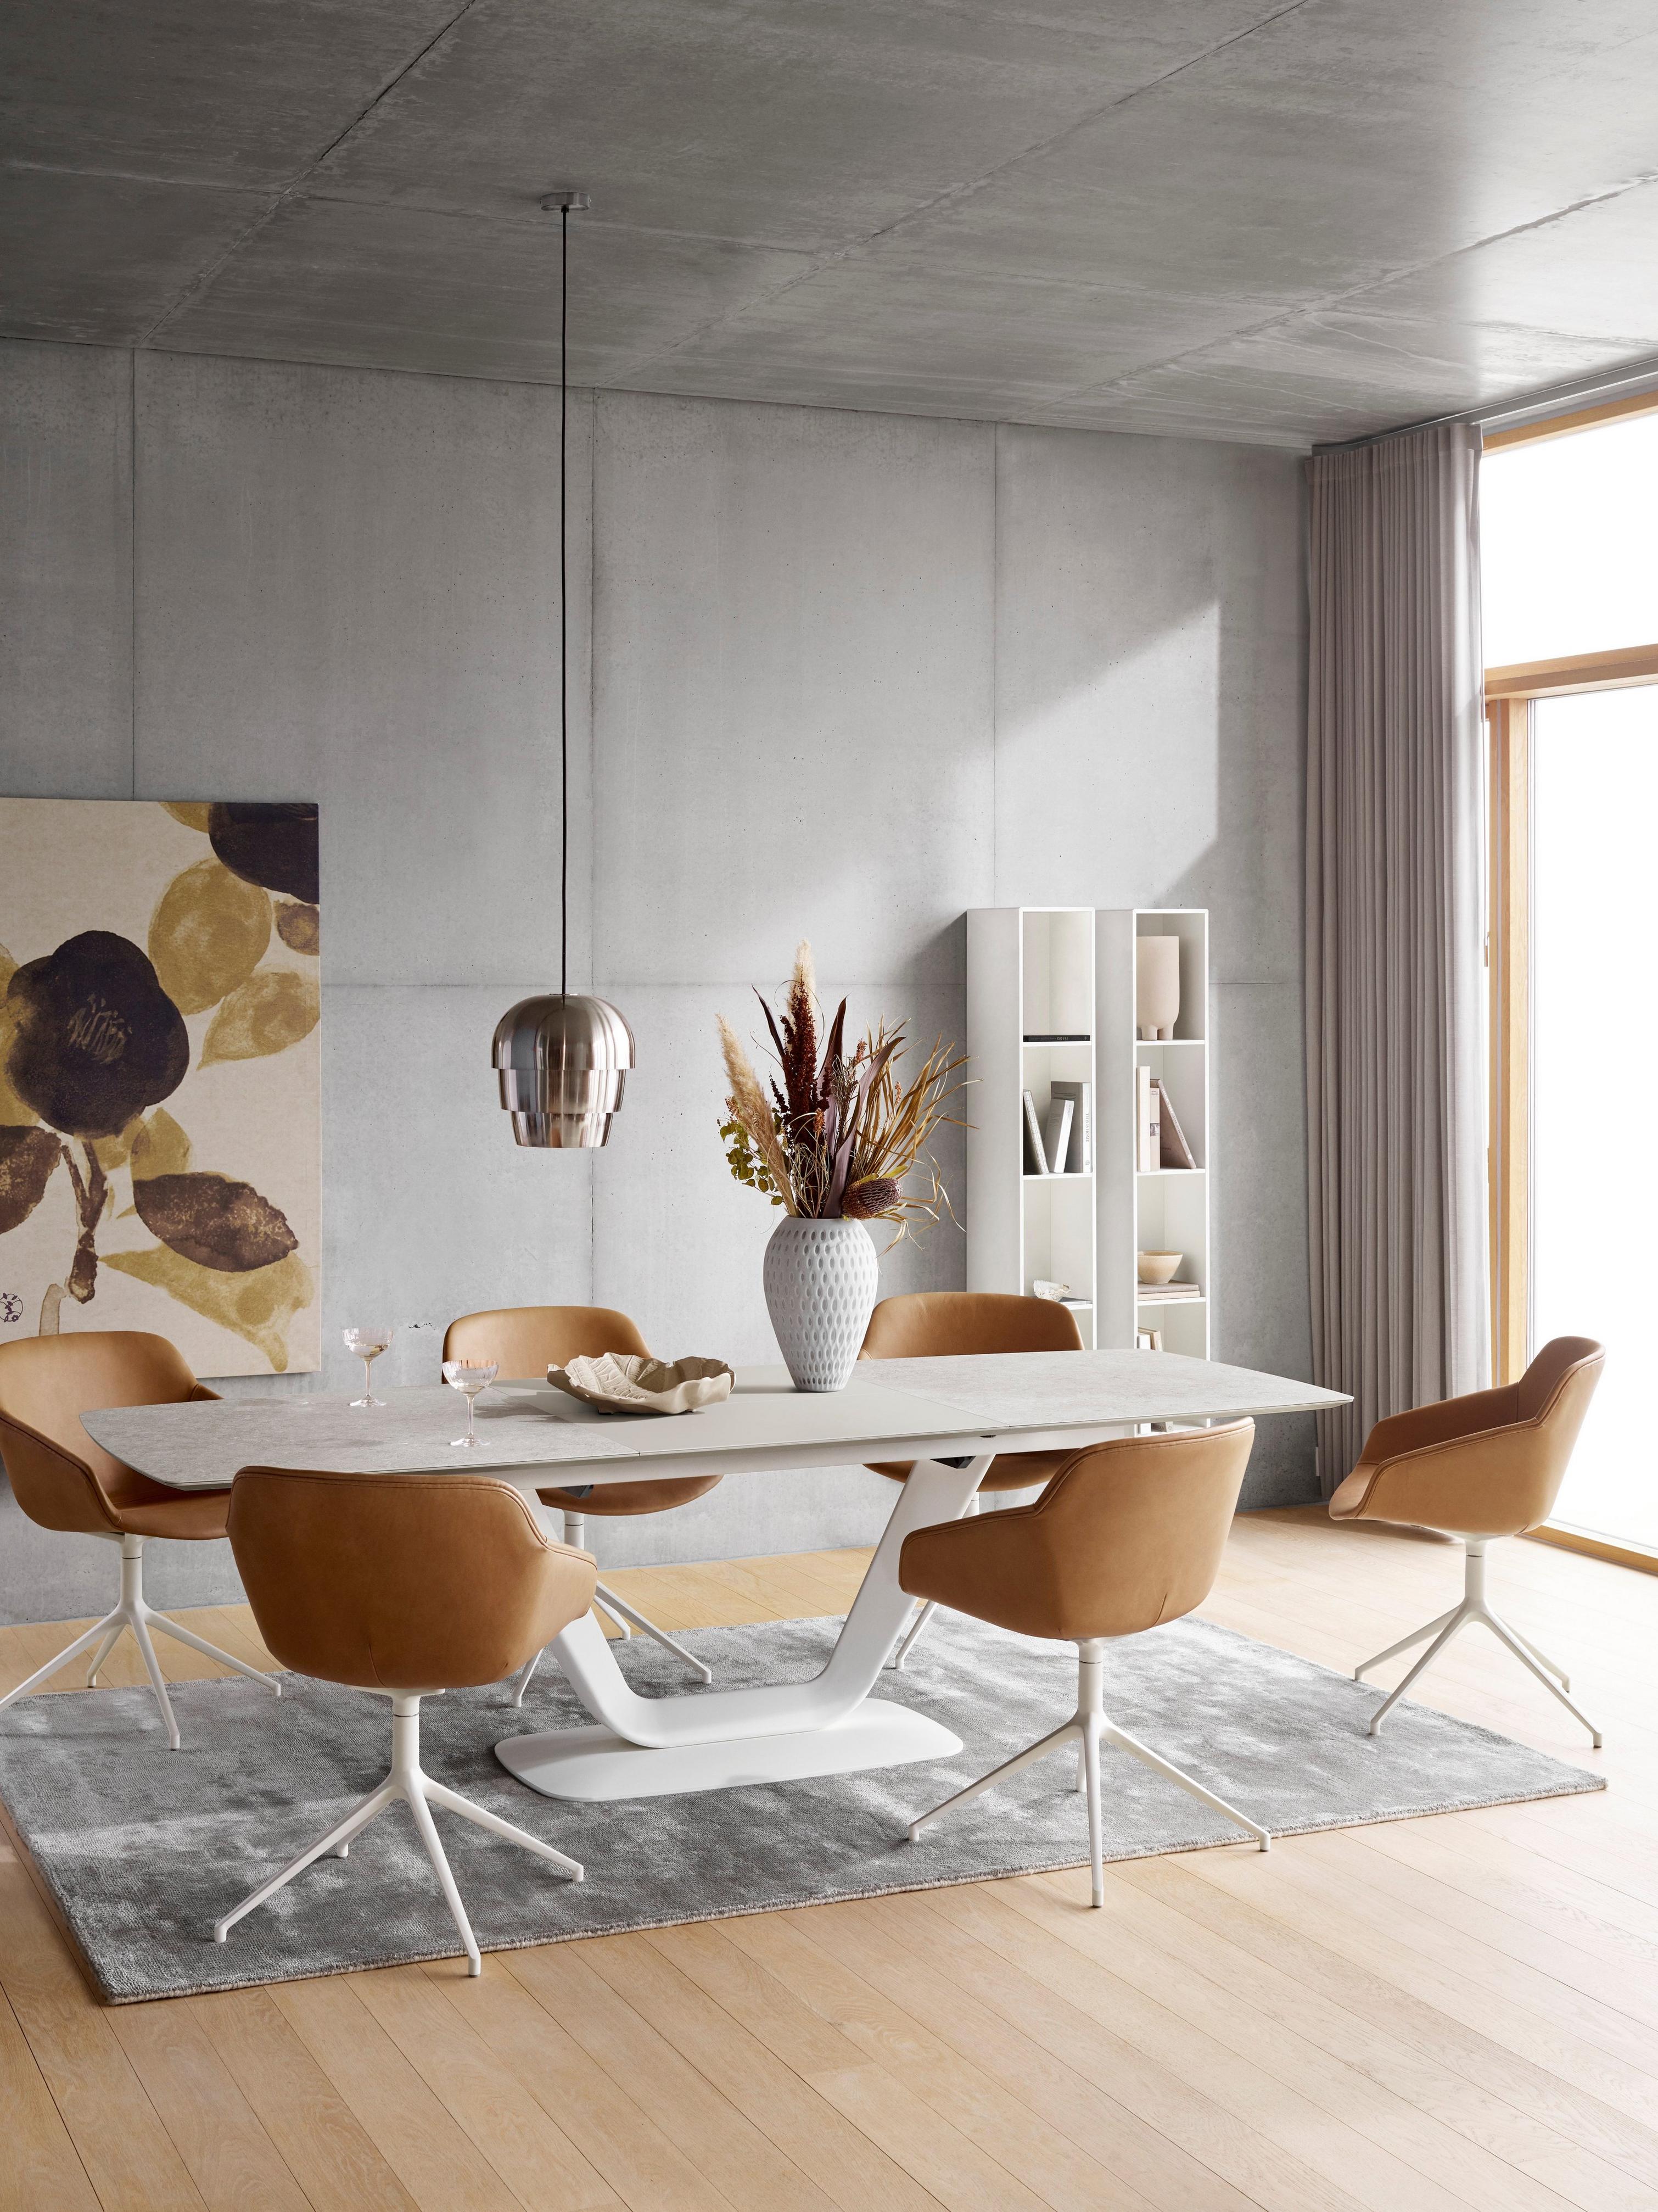 Matbord med bruna stolar, vitt bord, takbelysning och grå matta, konst och hyllor.